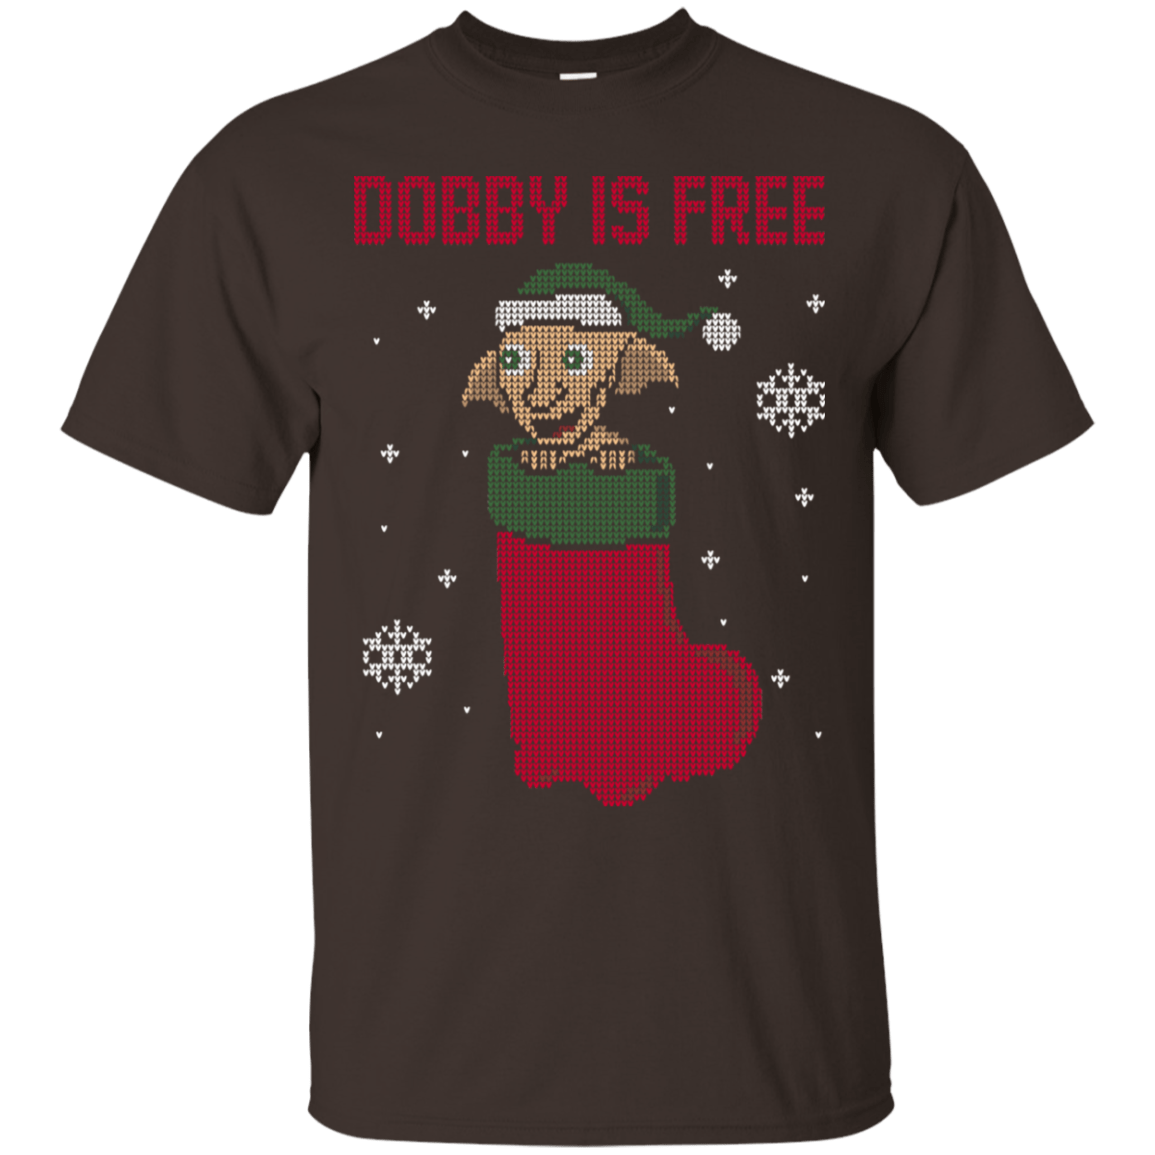 T-Shirts Dark Chocolate / S Free Elf! T-Shirt